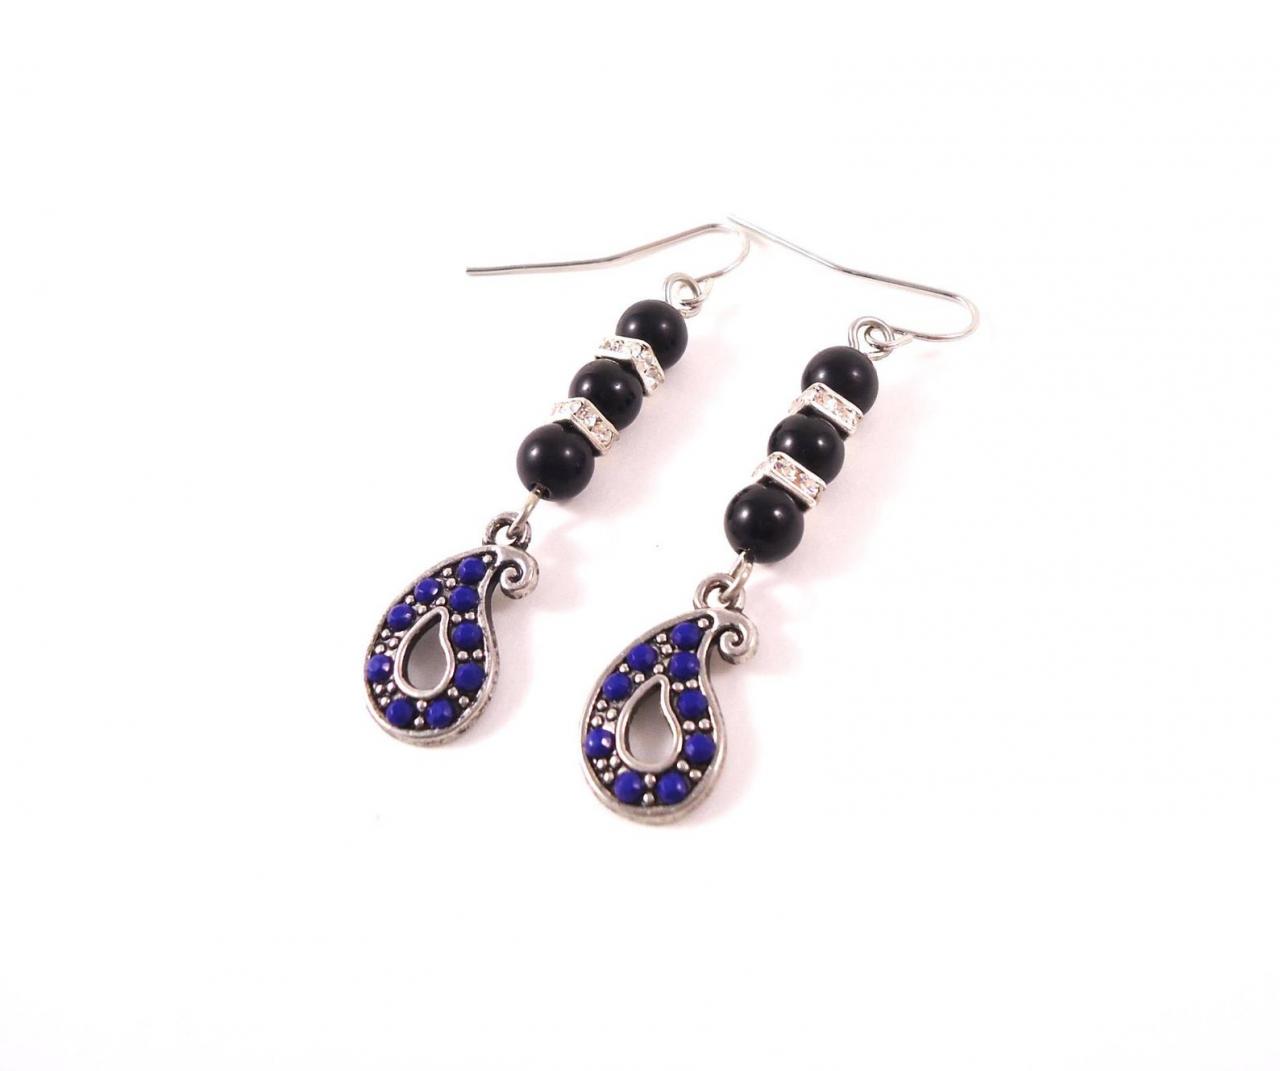 Gypsy Black Earrings - Black Romantic Earrings - Blue Romantic Earrings - Black Gypsy Earrings - Boho Black Earrings - Boho Onyx Jewelry